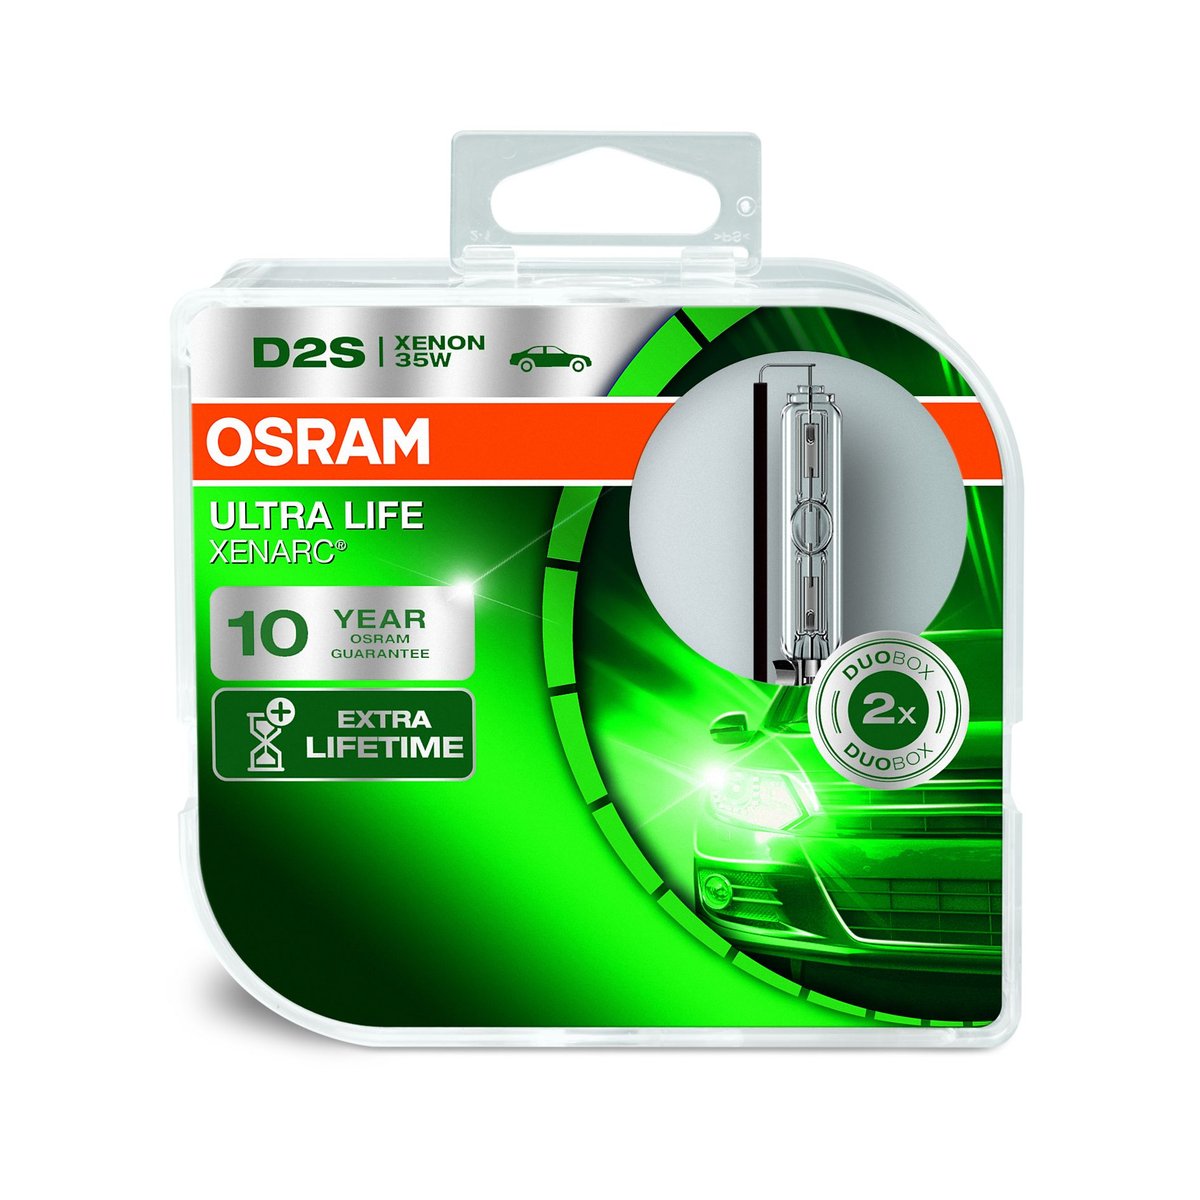 OSRAM D2S 35W P32d-2 Reflektorowe lampy wyładowcze XENARC ULTRA LIFE